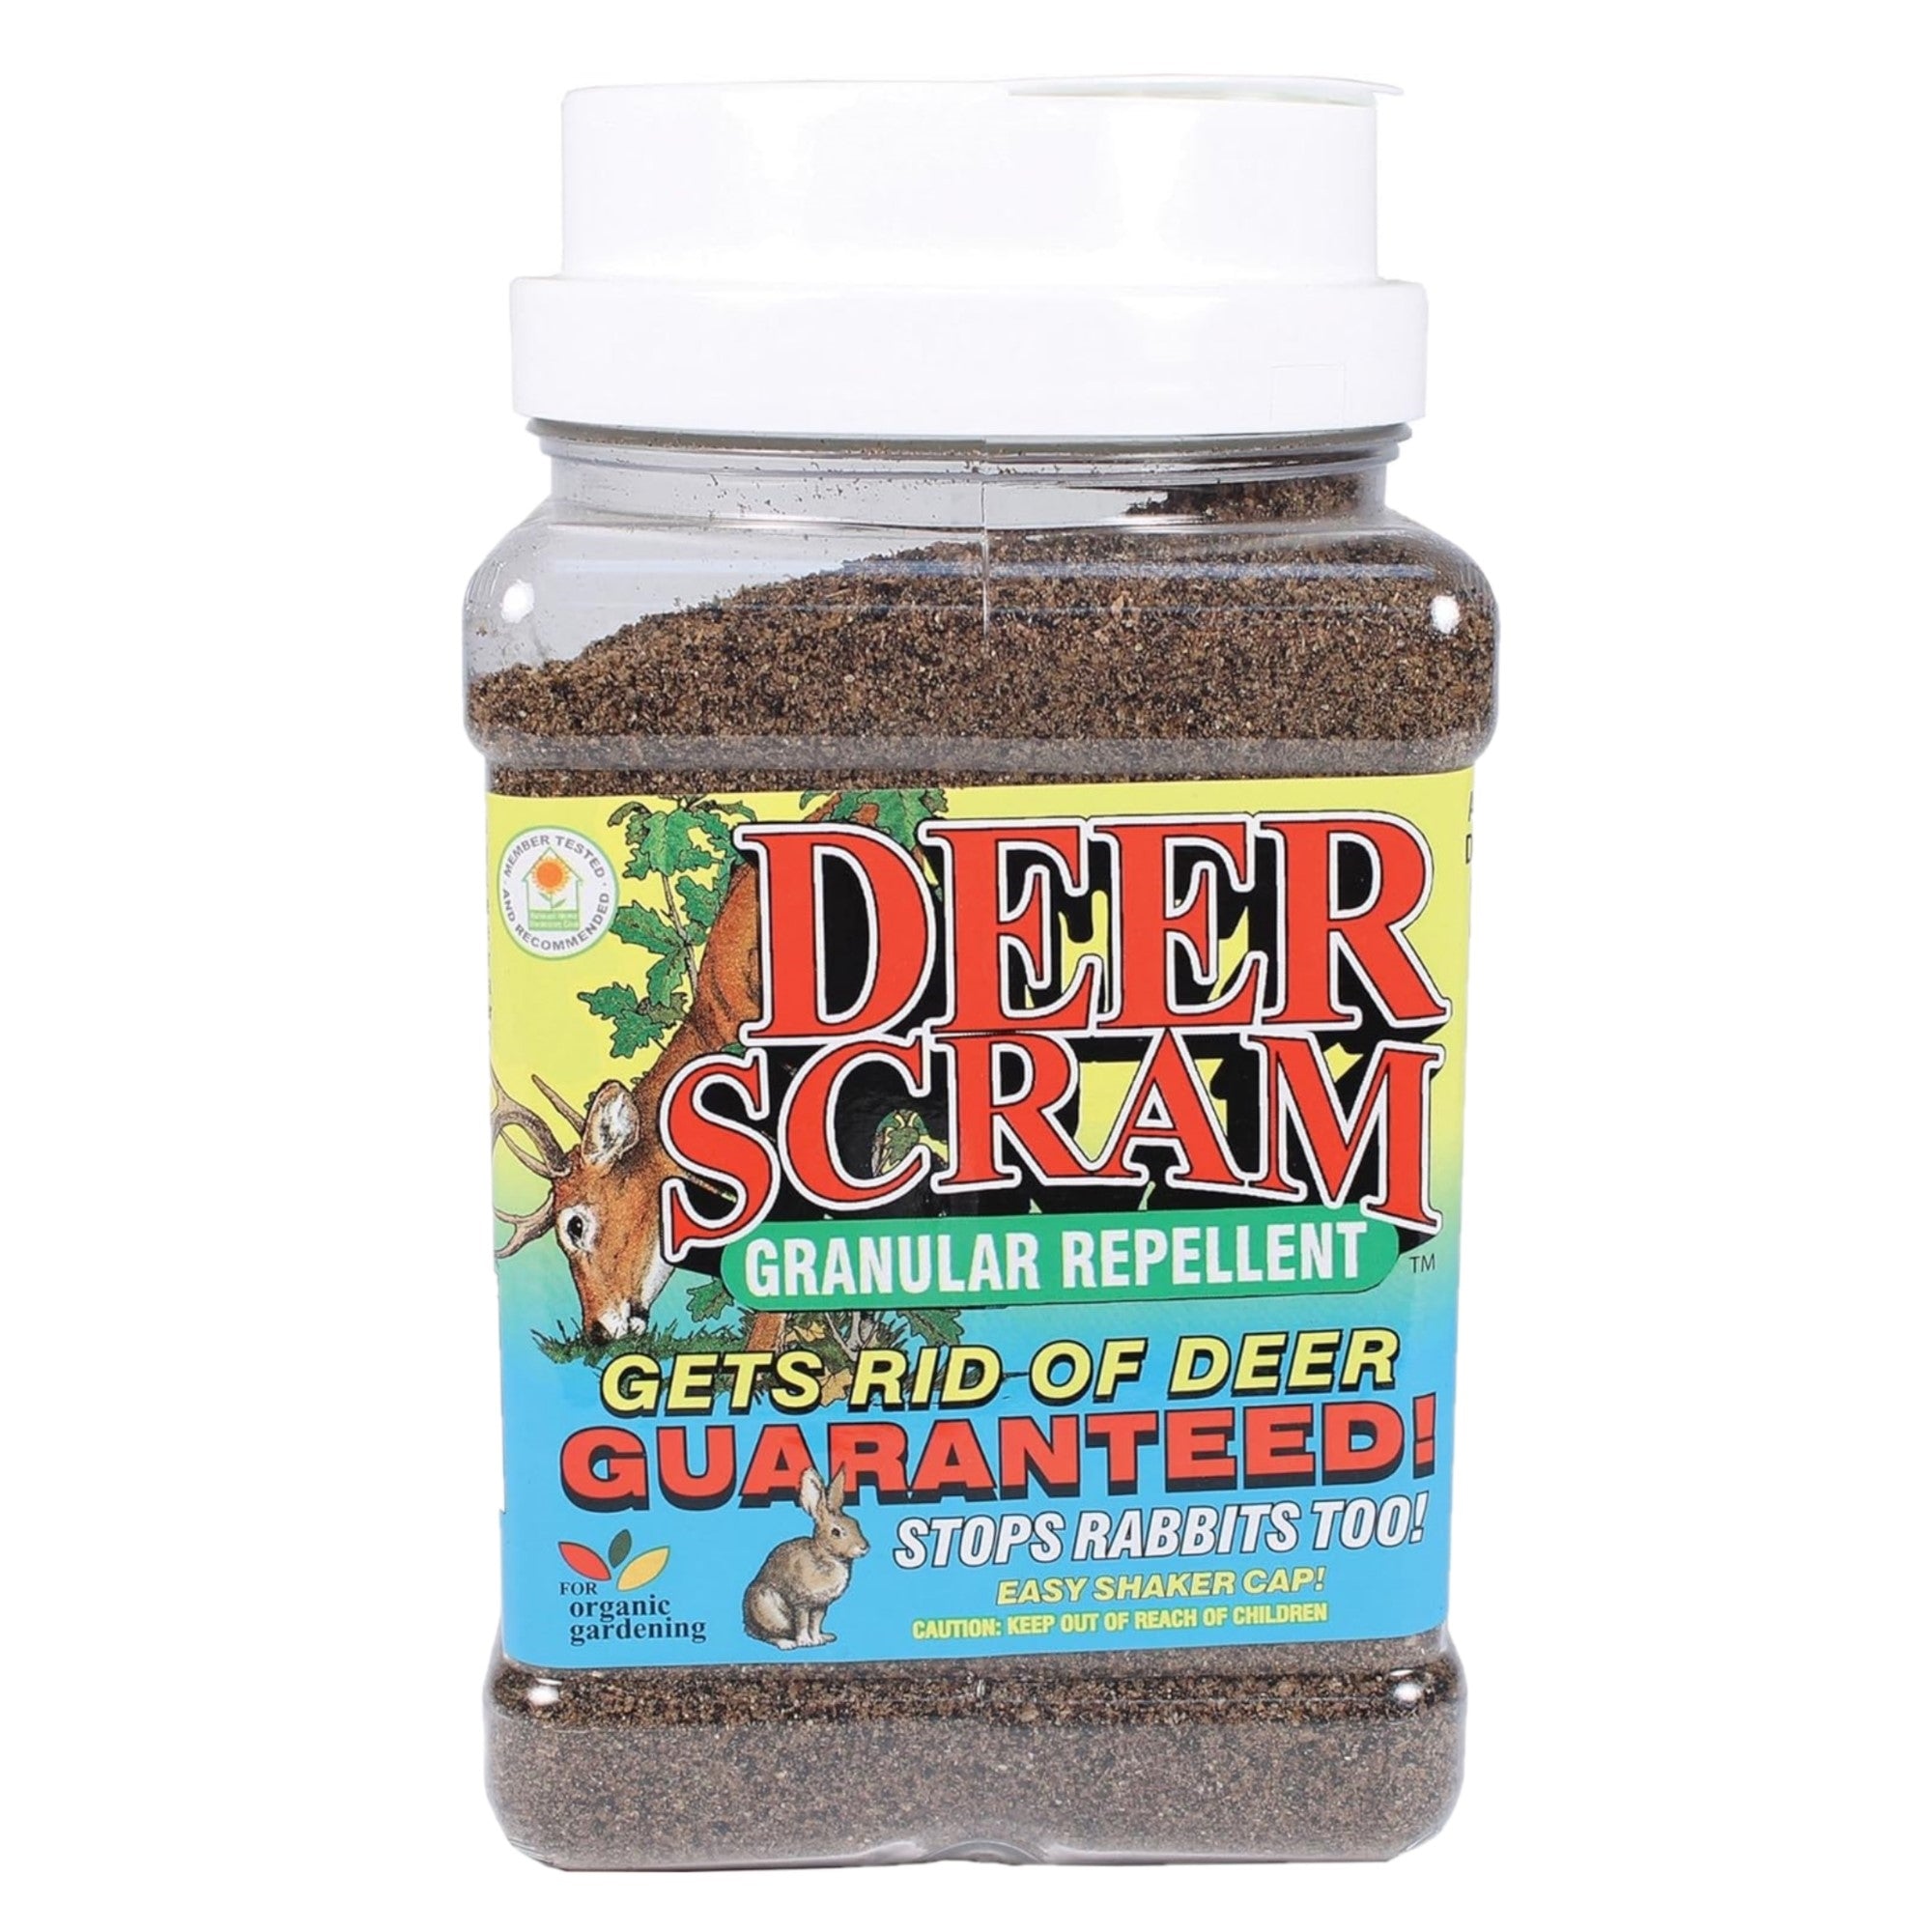 EPIC Deer Scram All Natural Granular Animal Repellent Shaker Can, 2.5lbs